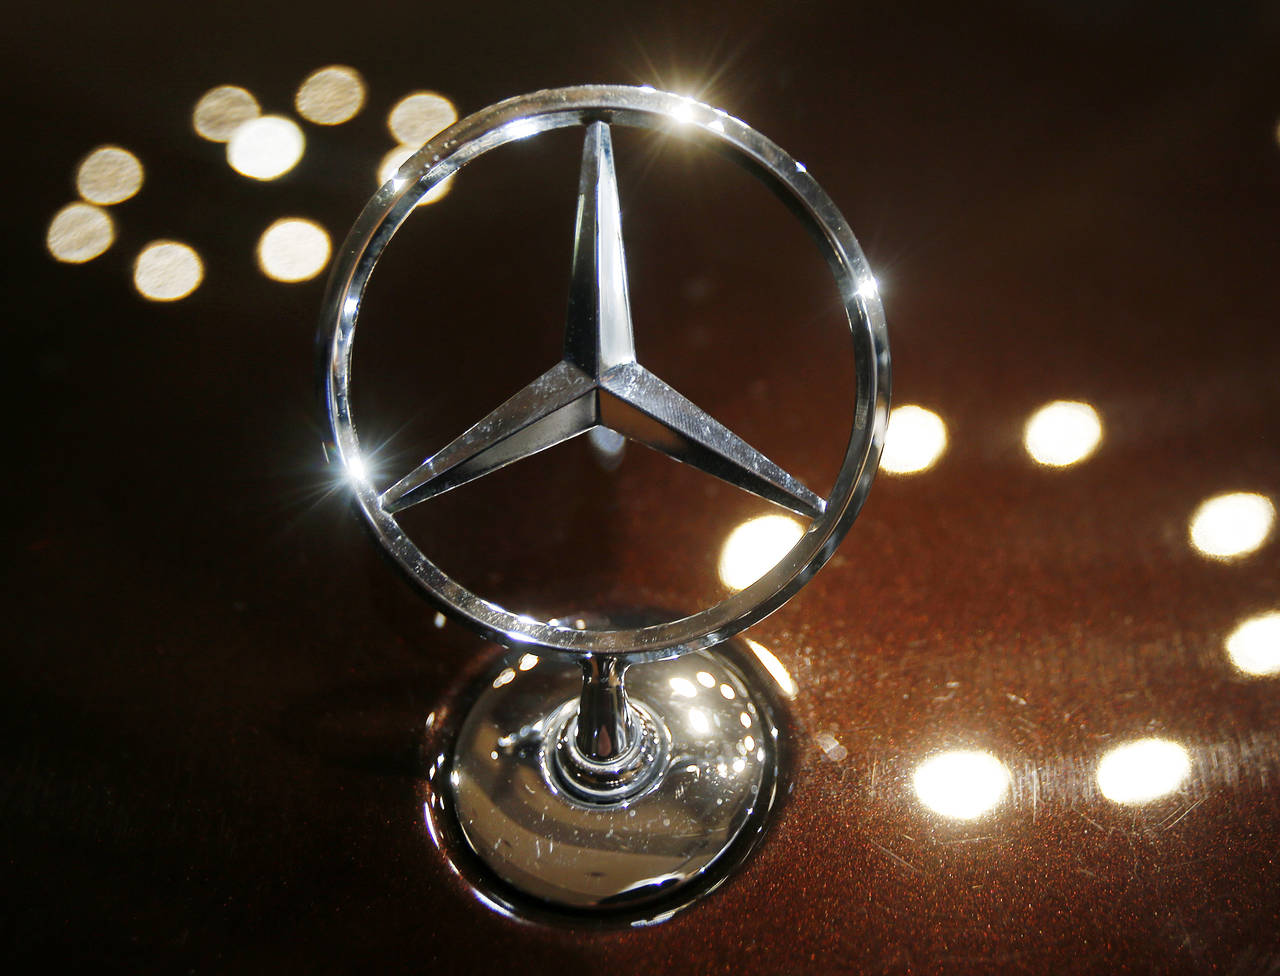 Daimlers Mercedes var også omfattet av utslippsskandalen. Nå har konsernet godtatt en bot på 8,6 milliarder kroner. Foto: Michael Probst / AP / NTB scanpix